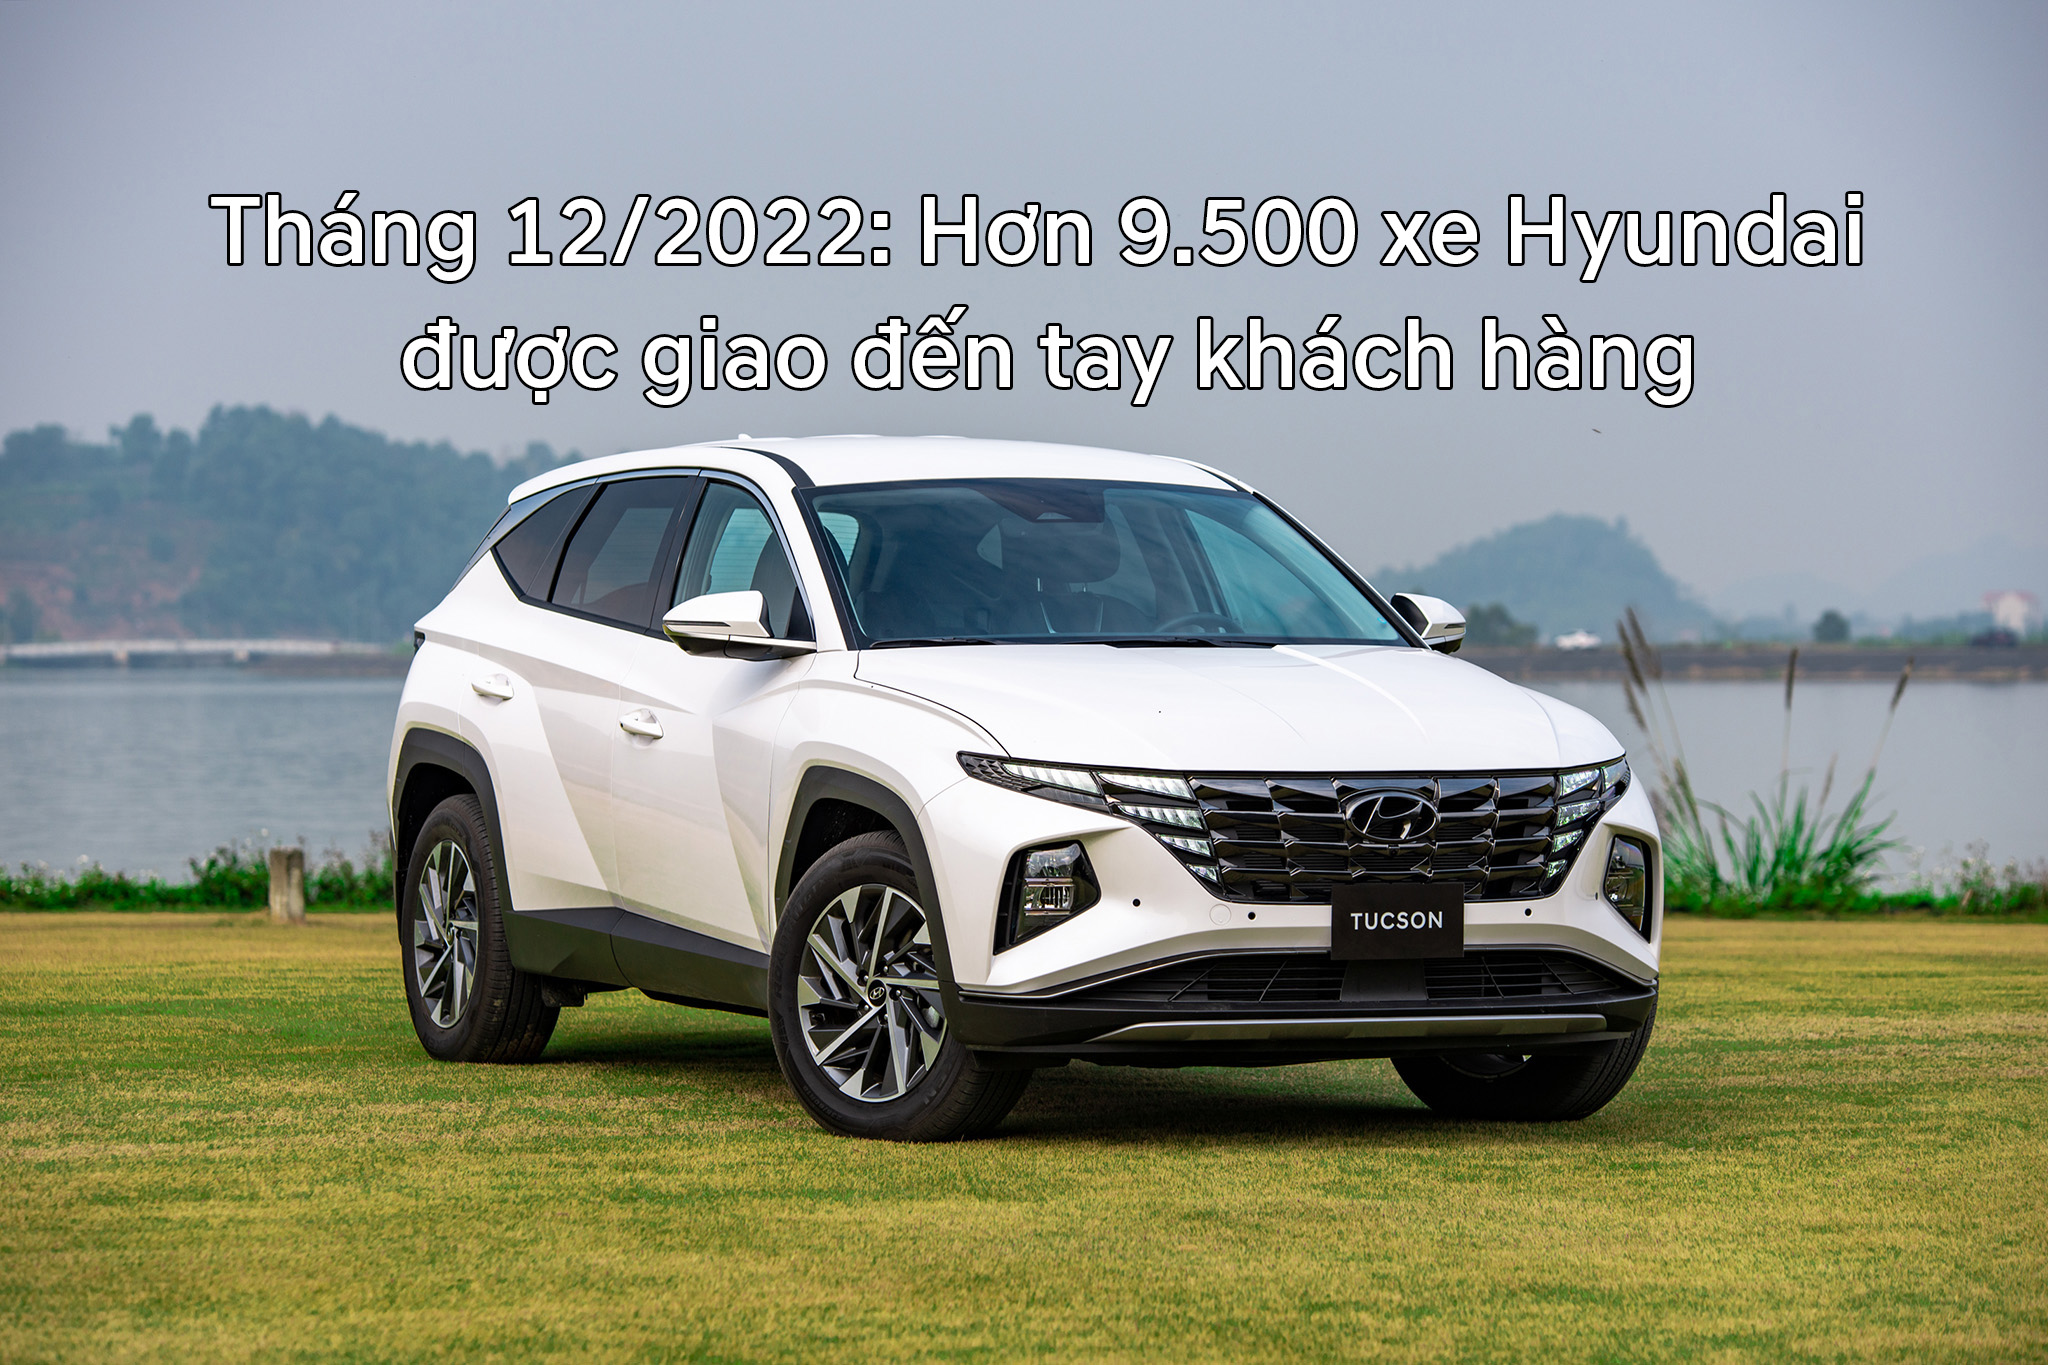 Tháng 12/2022: Hơn 9.500 xe Hyundai được giao đến tay khách hàng